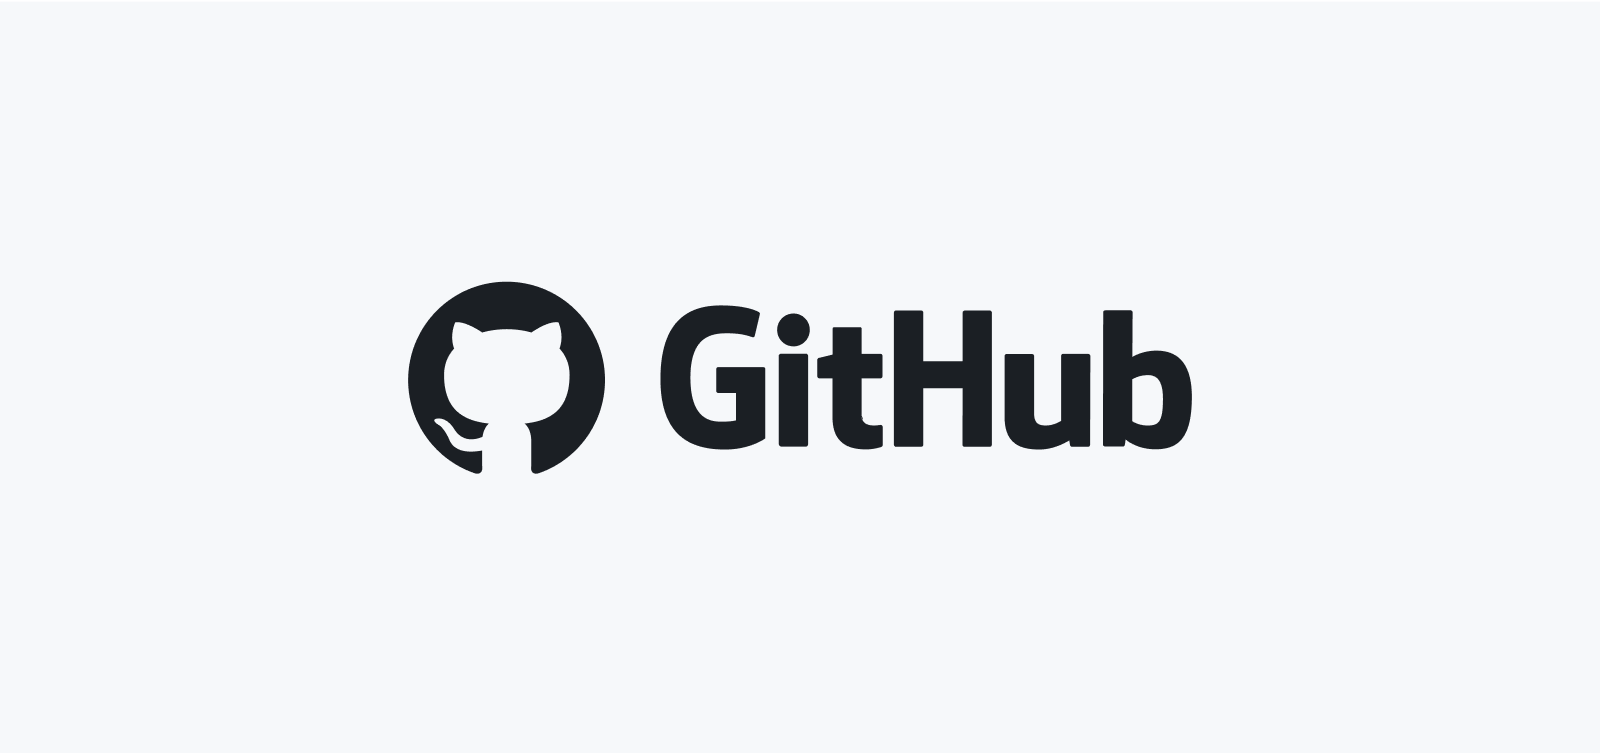 Light mode GitHub logo lockup